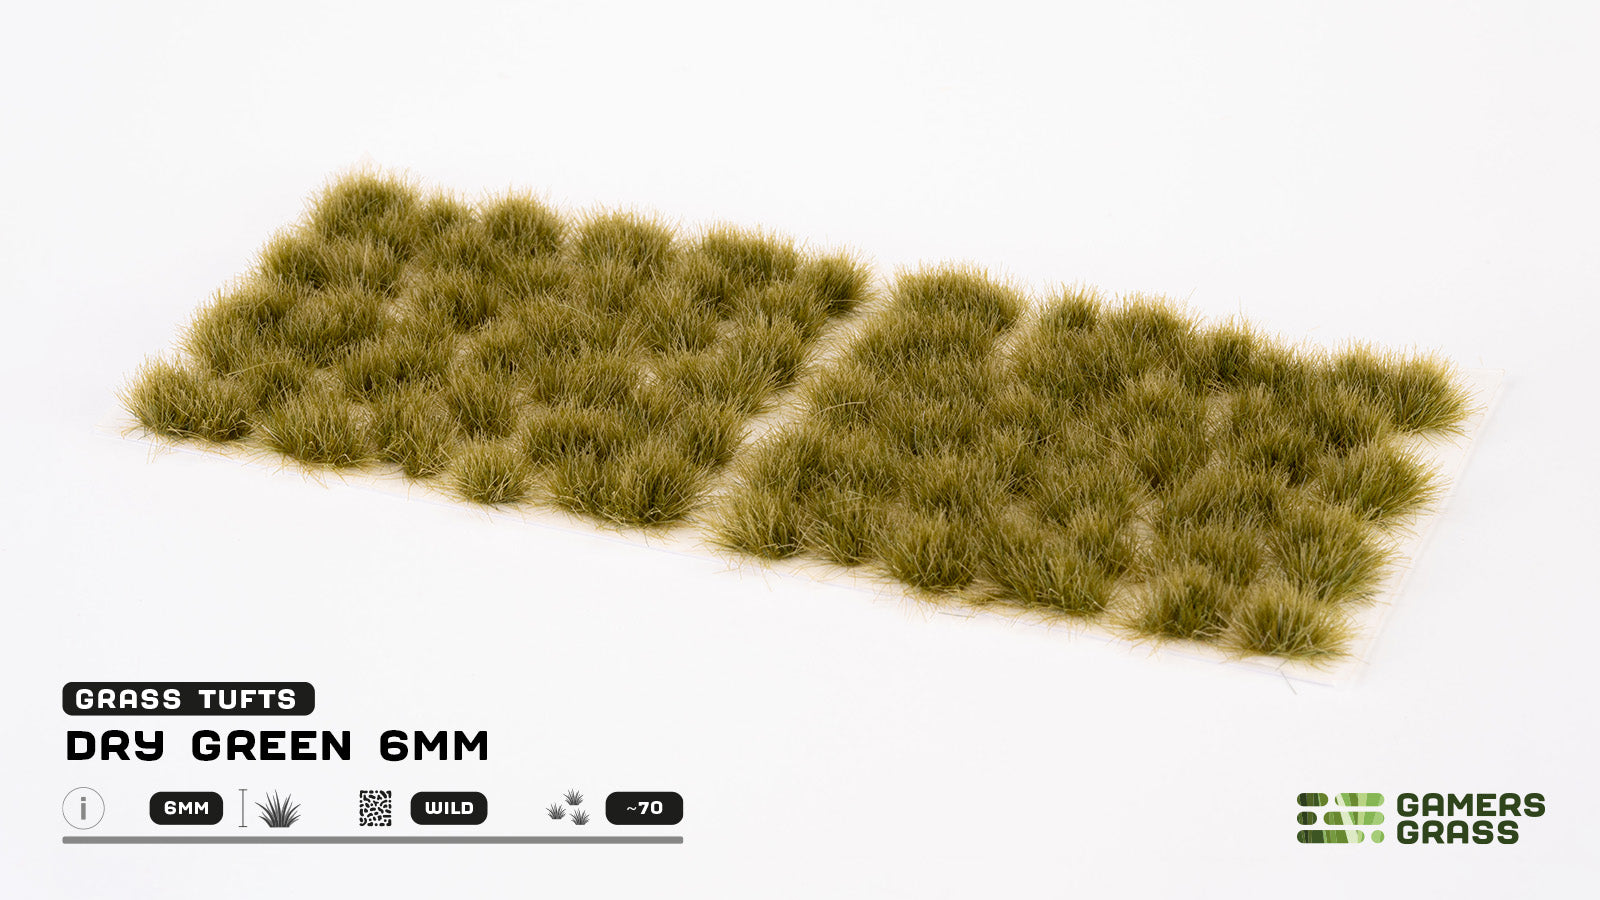 GamersGrass Grass Tufts: Dry Green 6mm - Wild | Gauntlet Hobbies - Angola